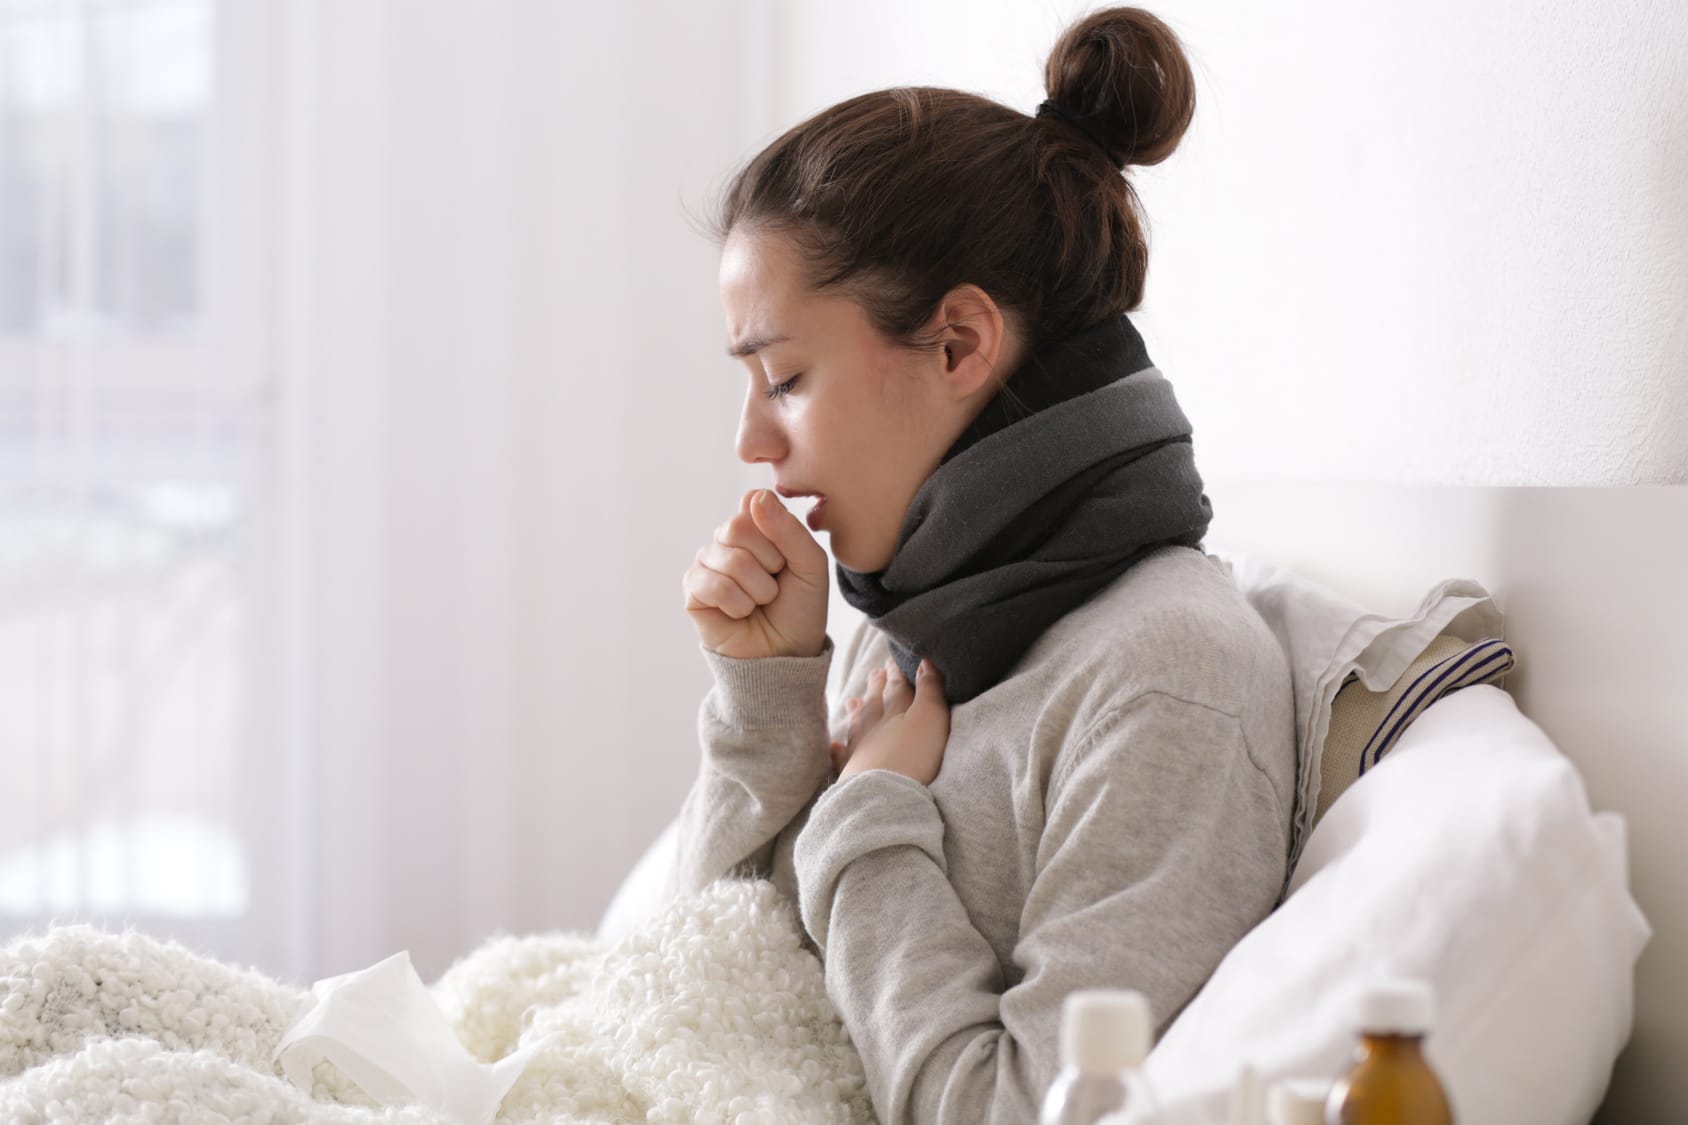 Erkältung - Symptome, Ursachen und Behandlung